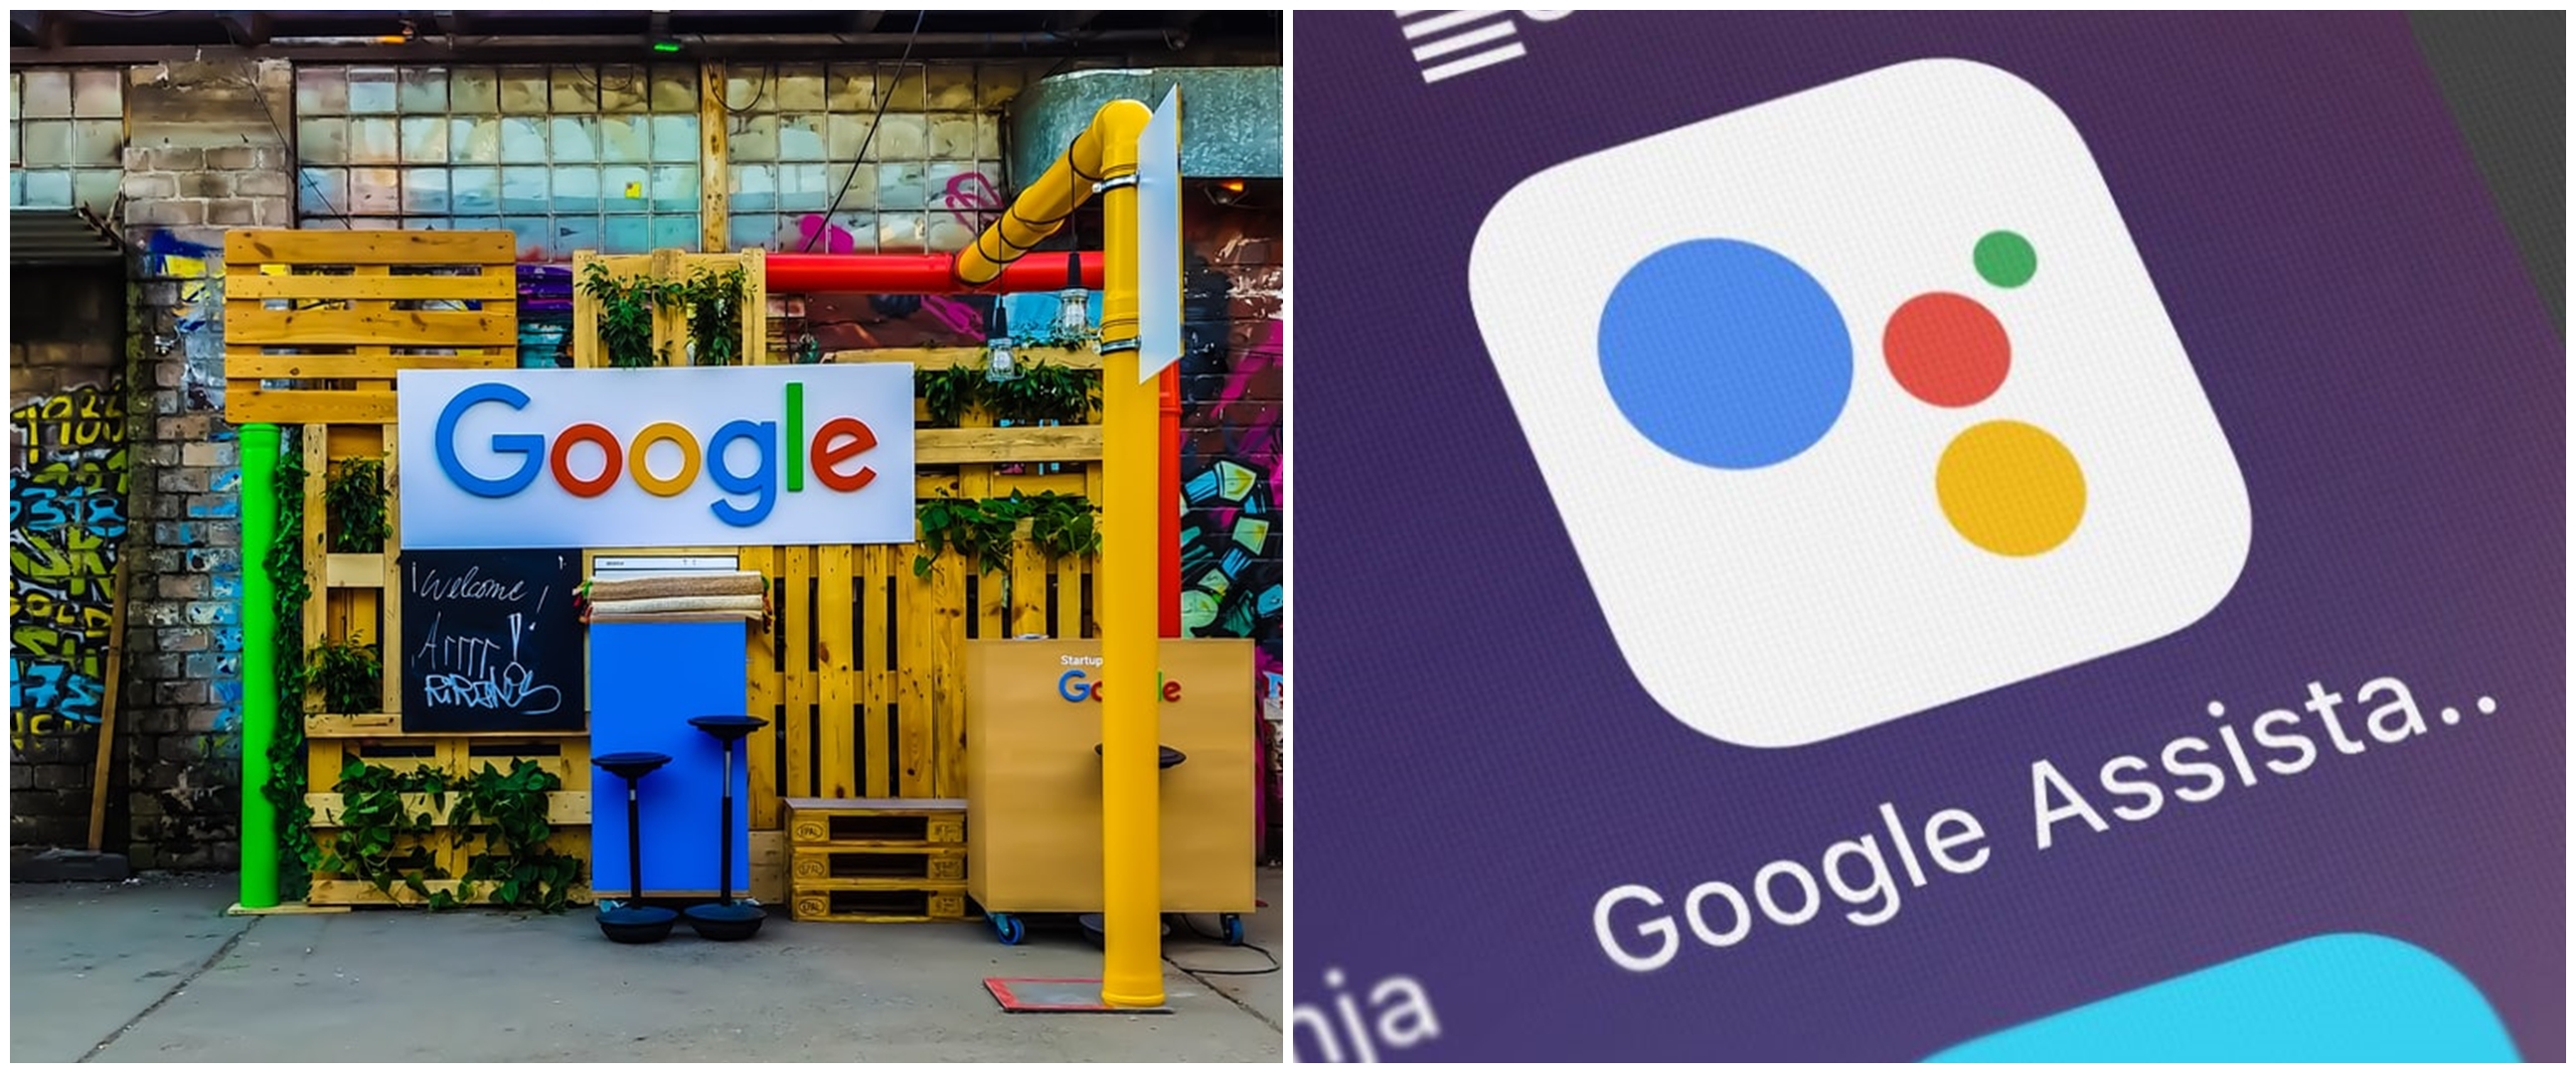 8 Fitur terbaru Google Assistant di 2020, canggih dan praktis